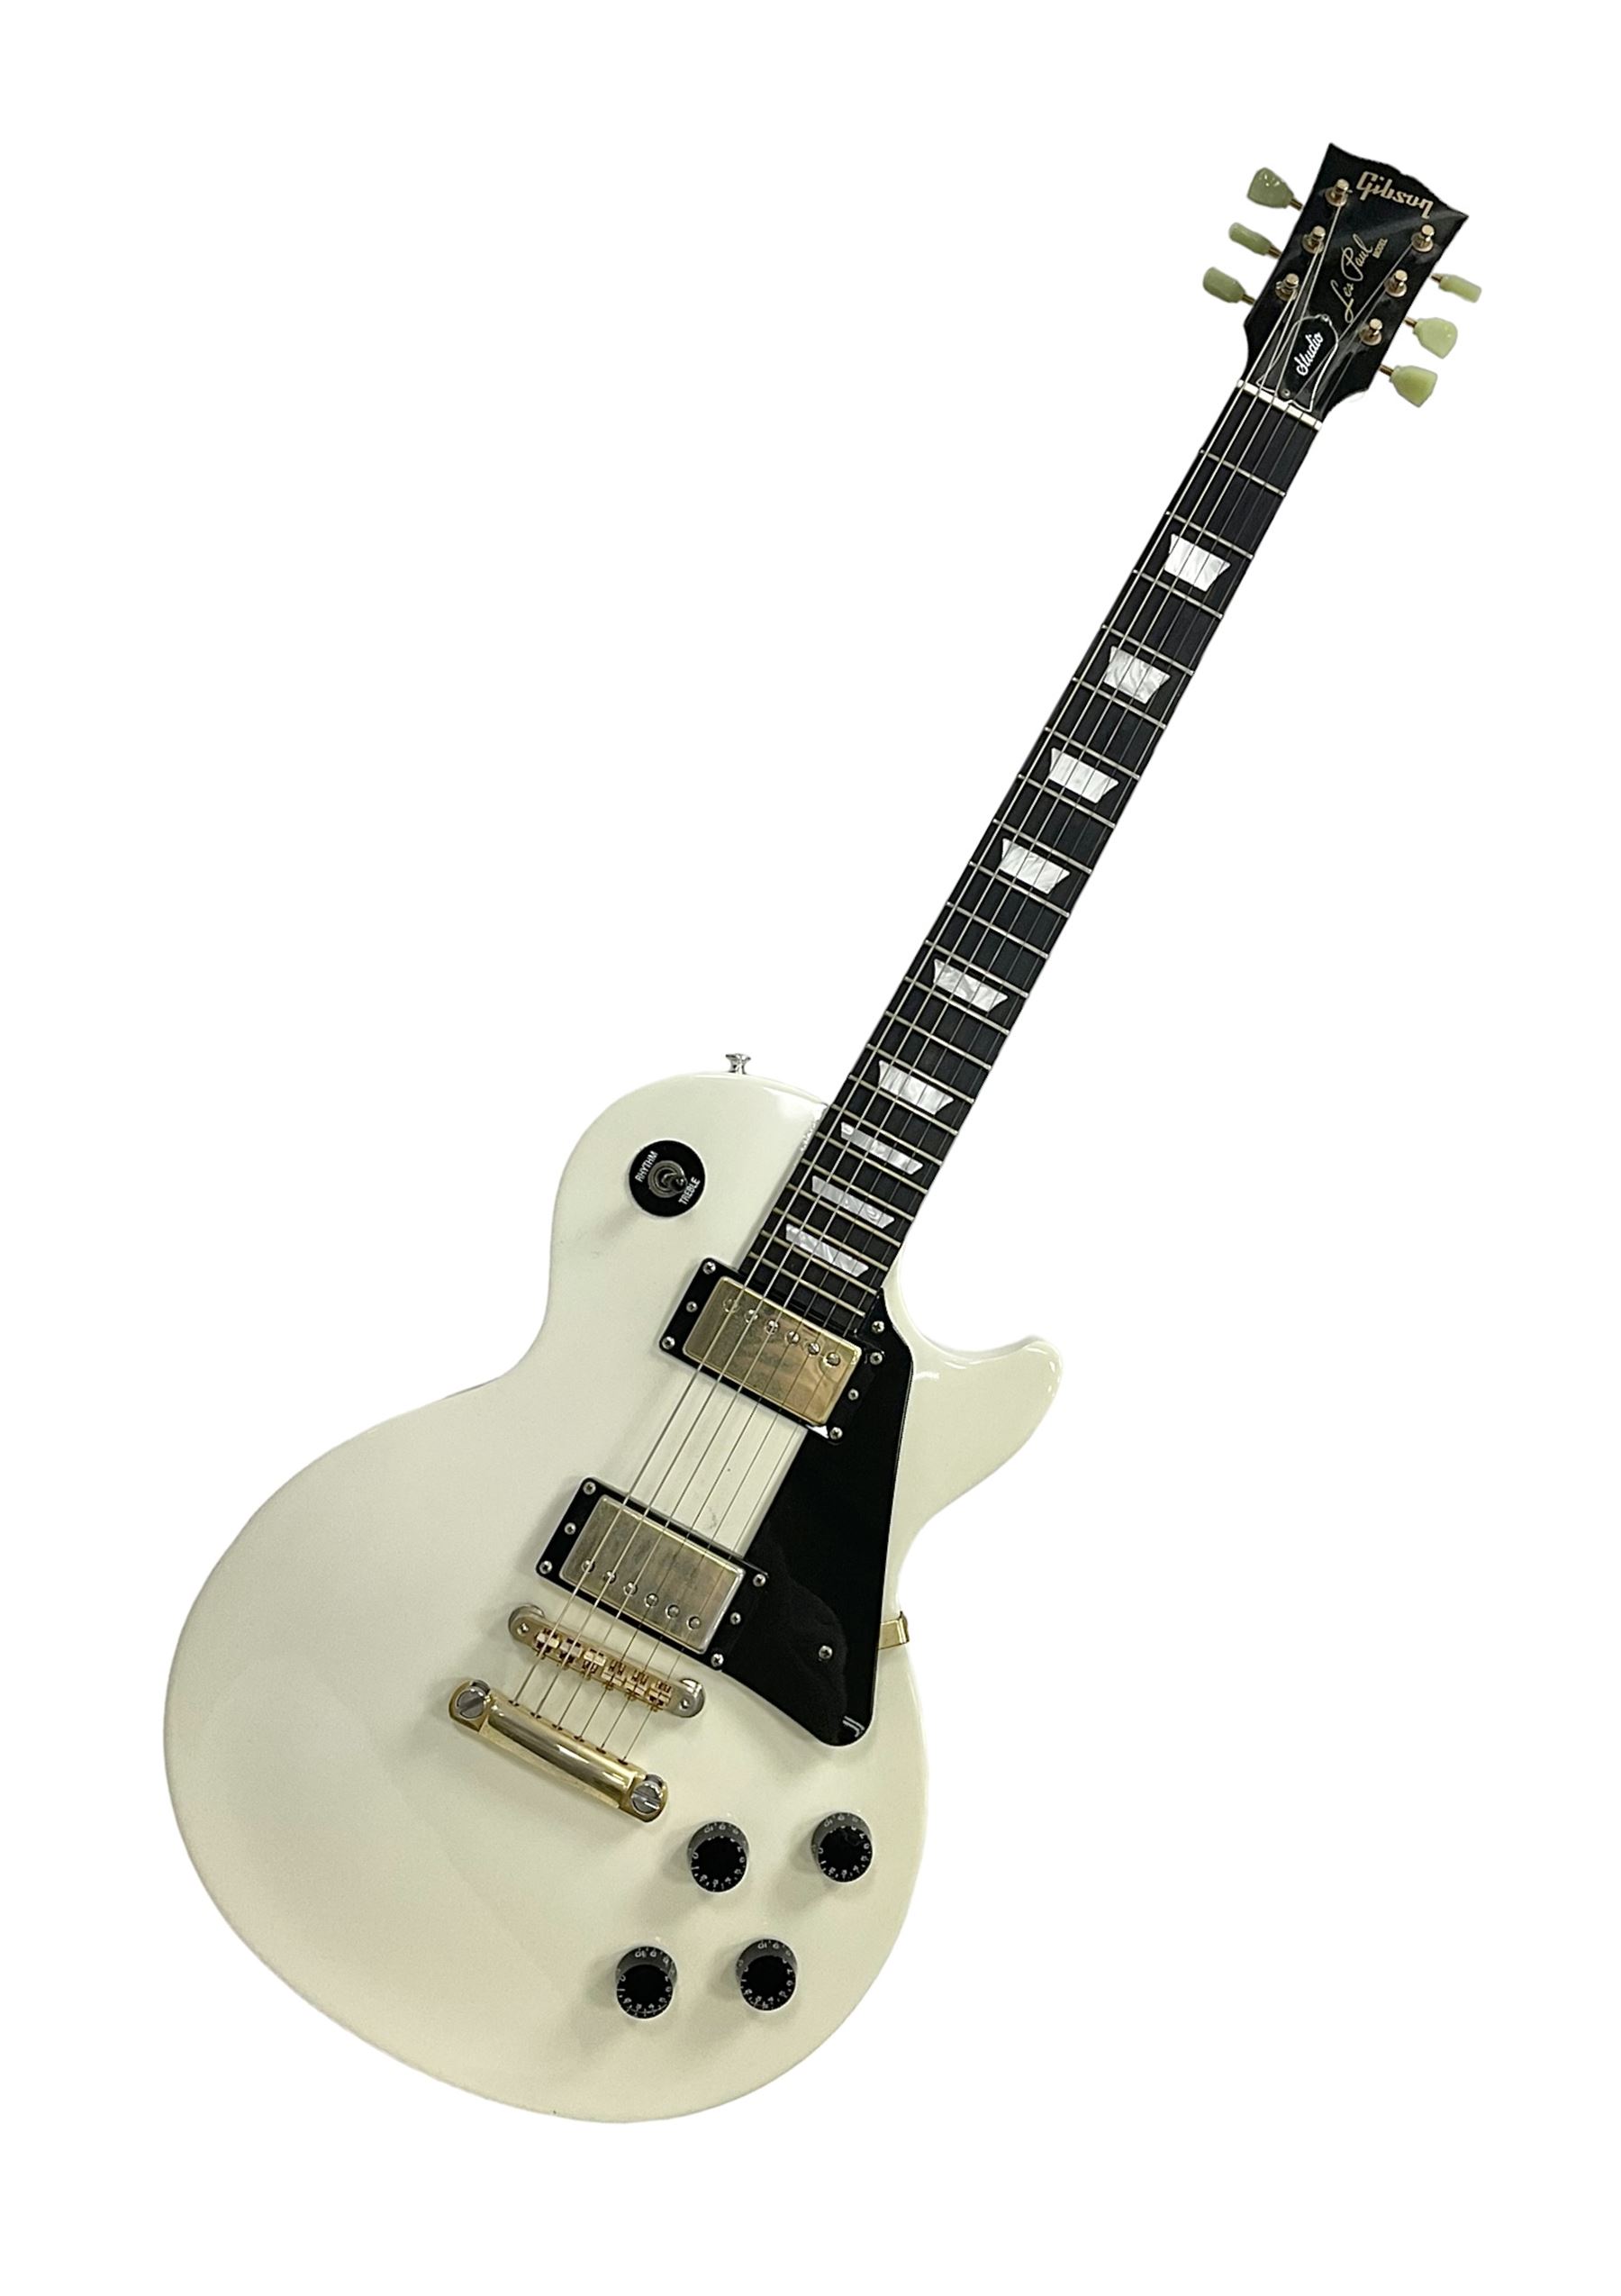 2010 Gibson Les Paul studio guitar